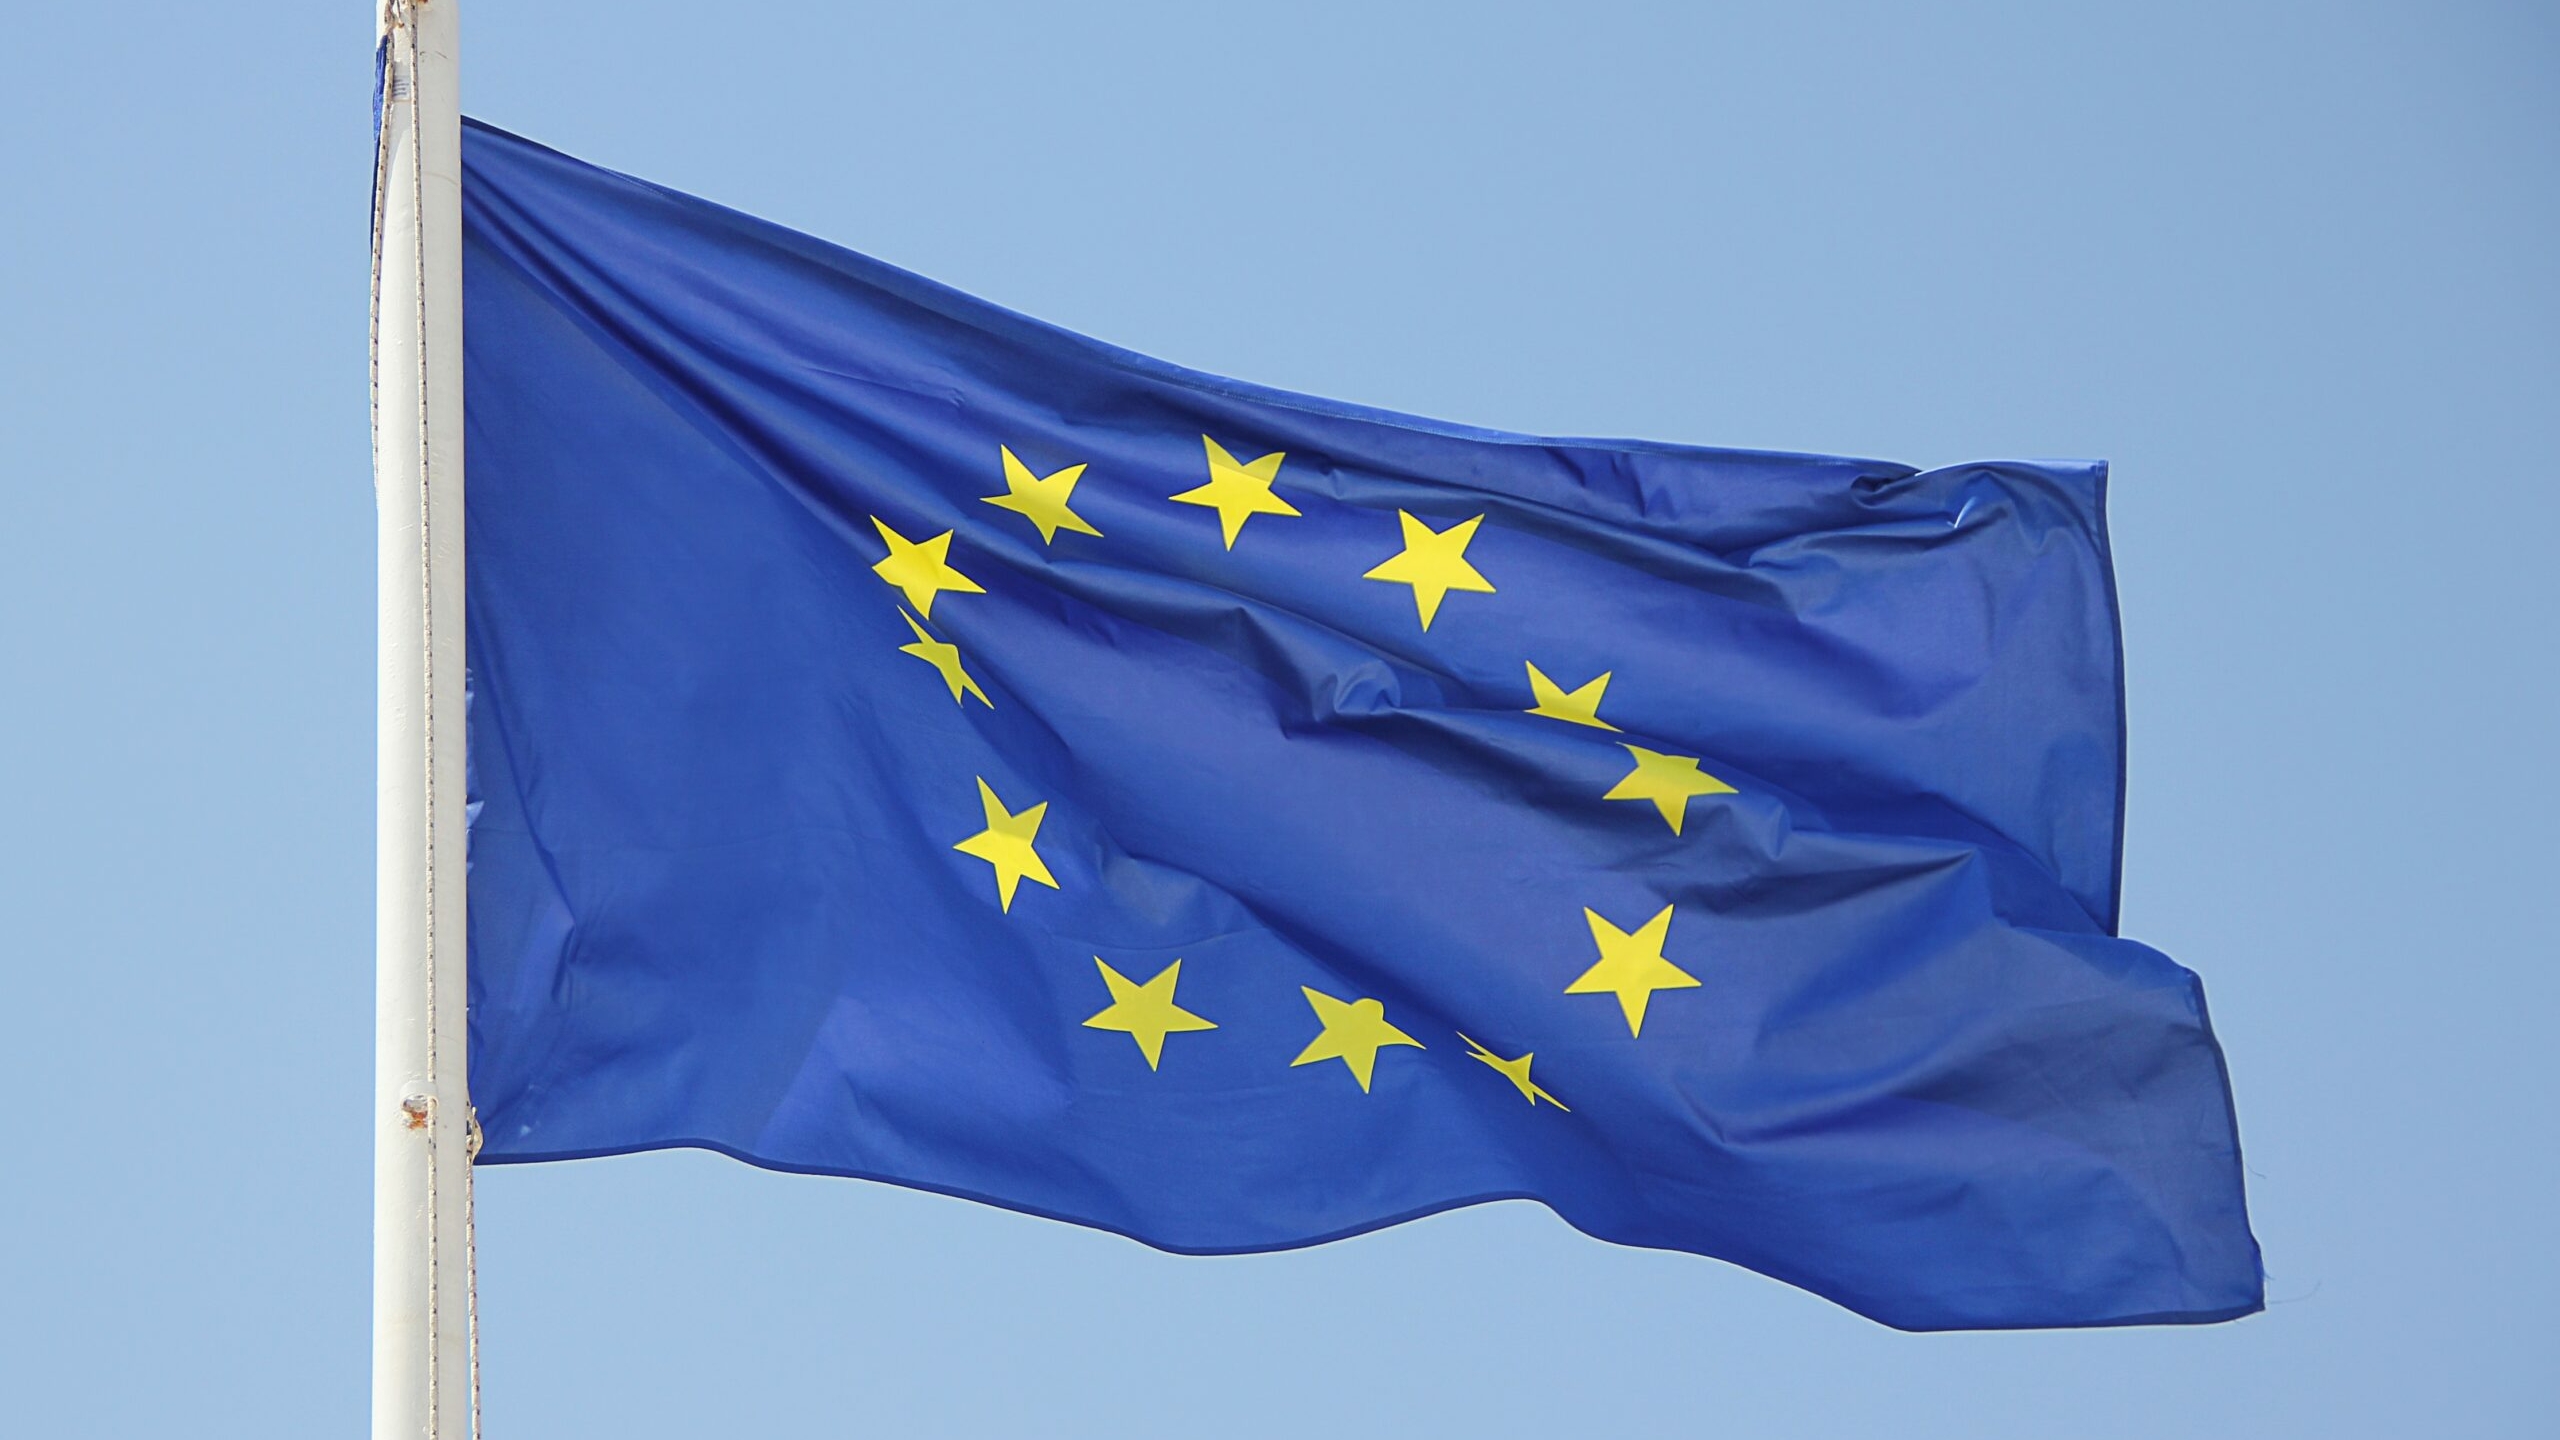 ЕС одобрил передачу доходов от активов РФ в пользу Киева